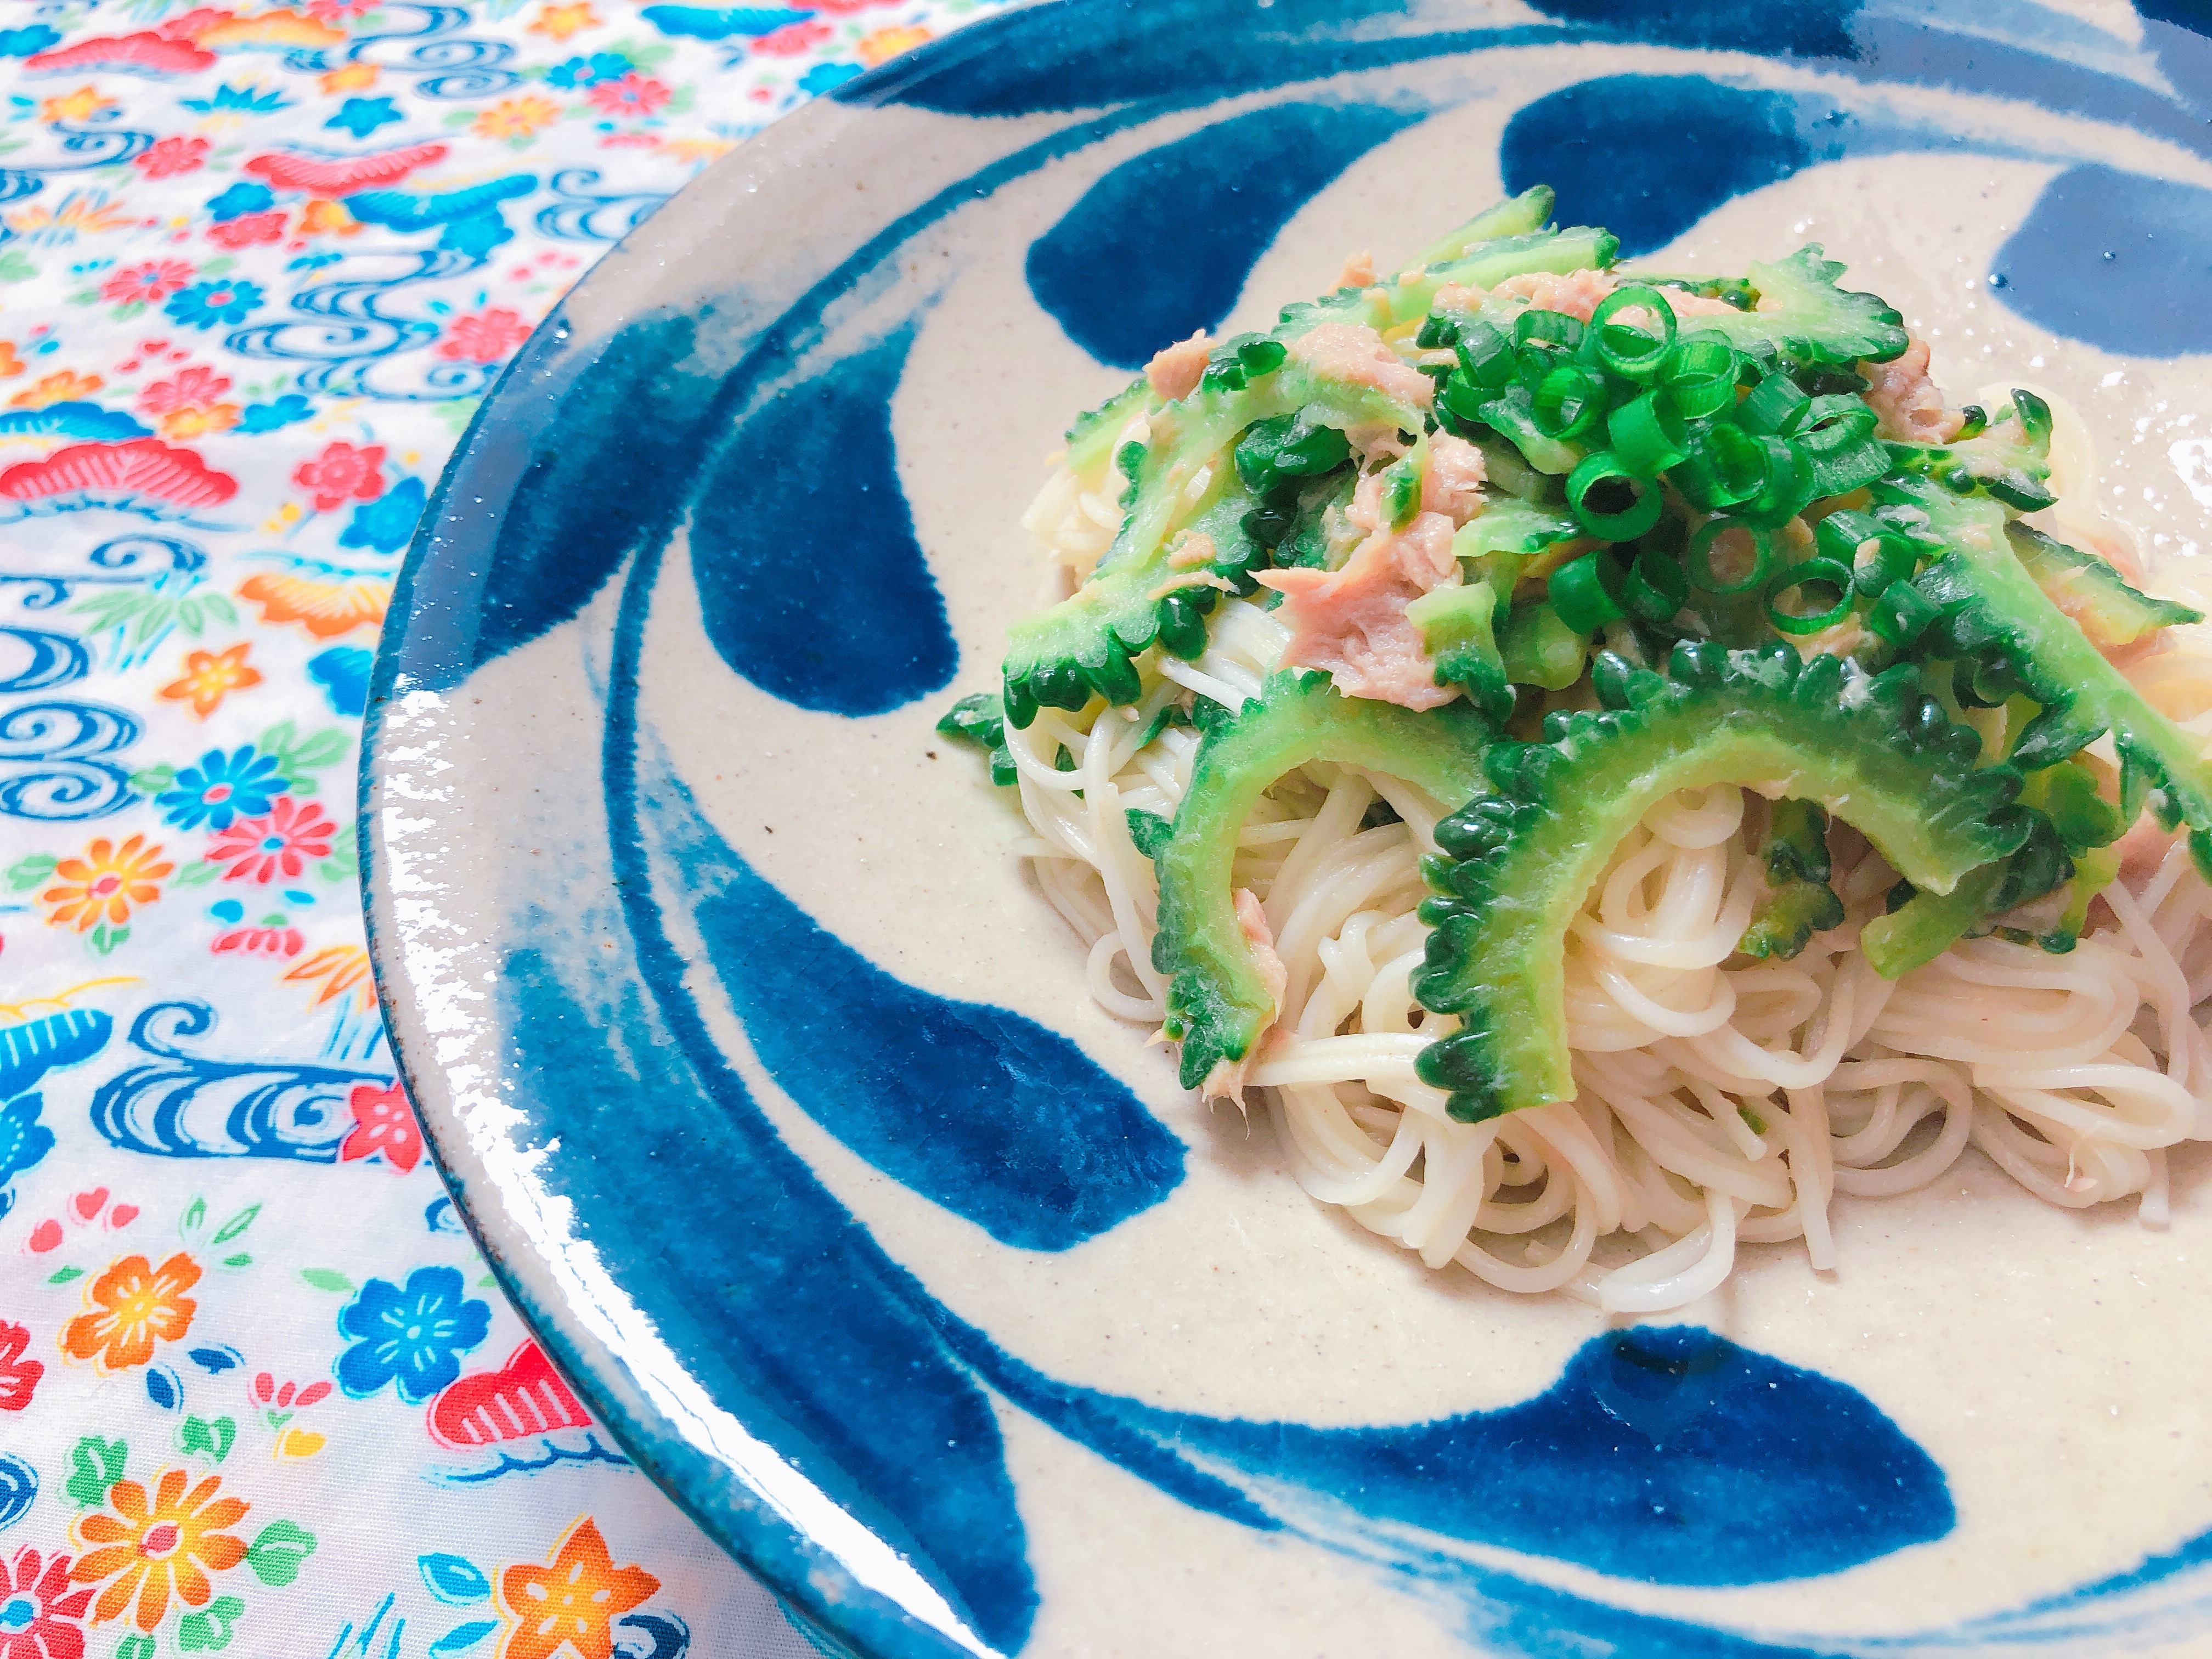 ツナ缶を使って沖縄家庭料理「ソーメンチャンプルー」を作ろう! 